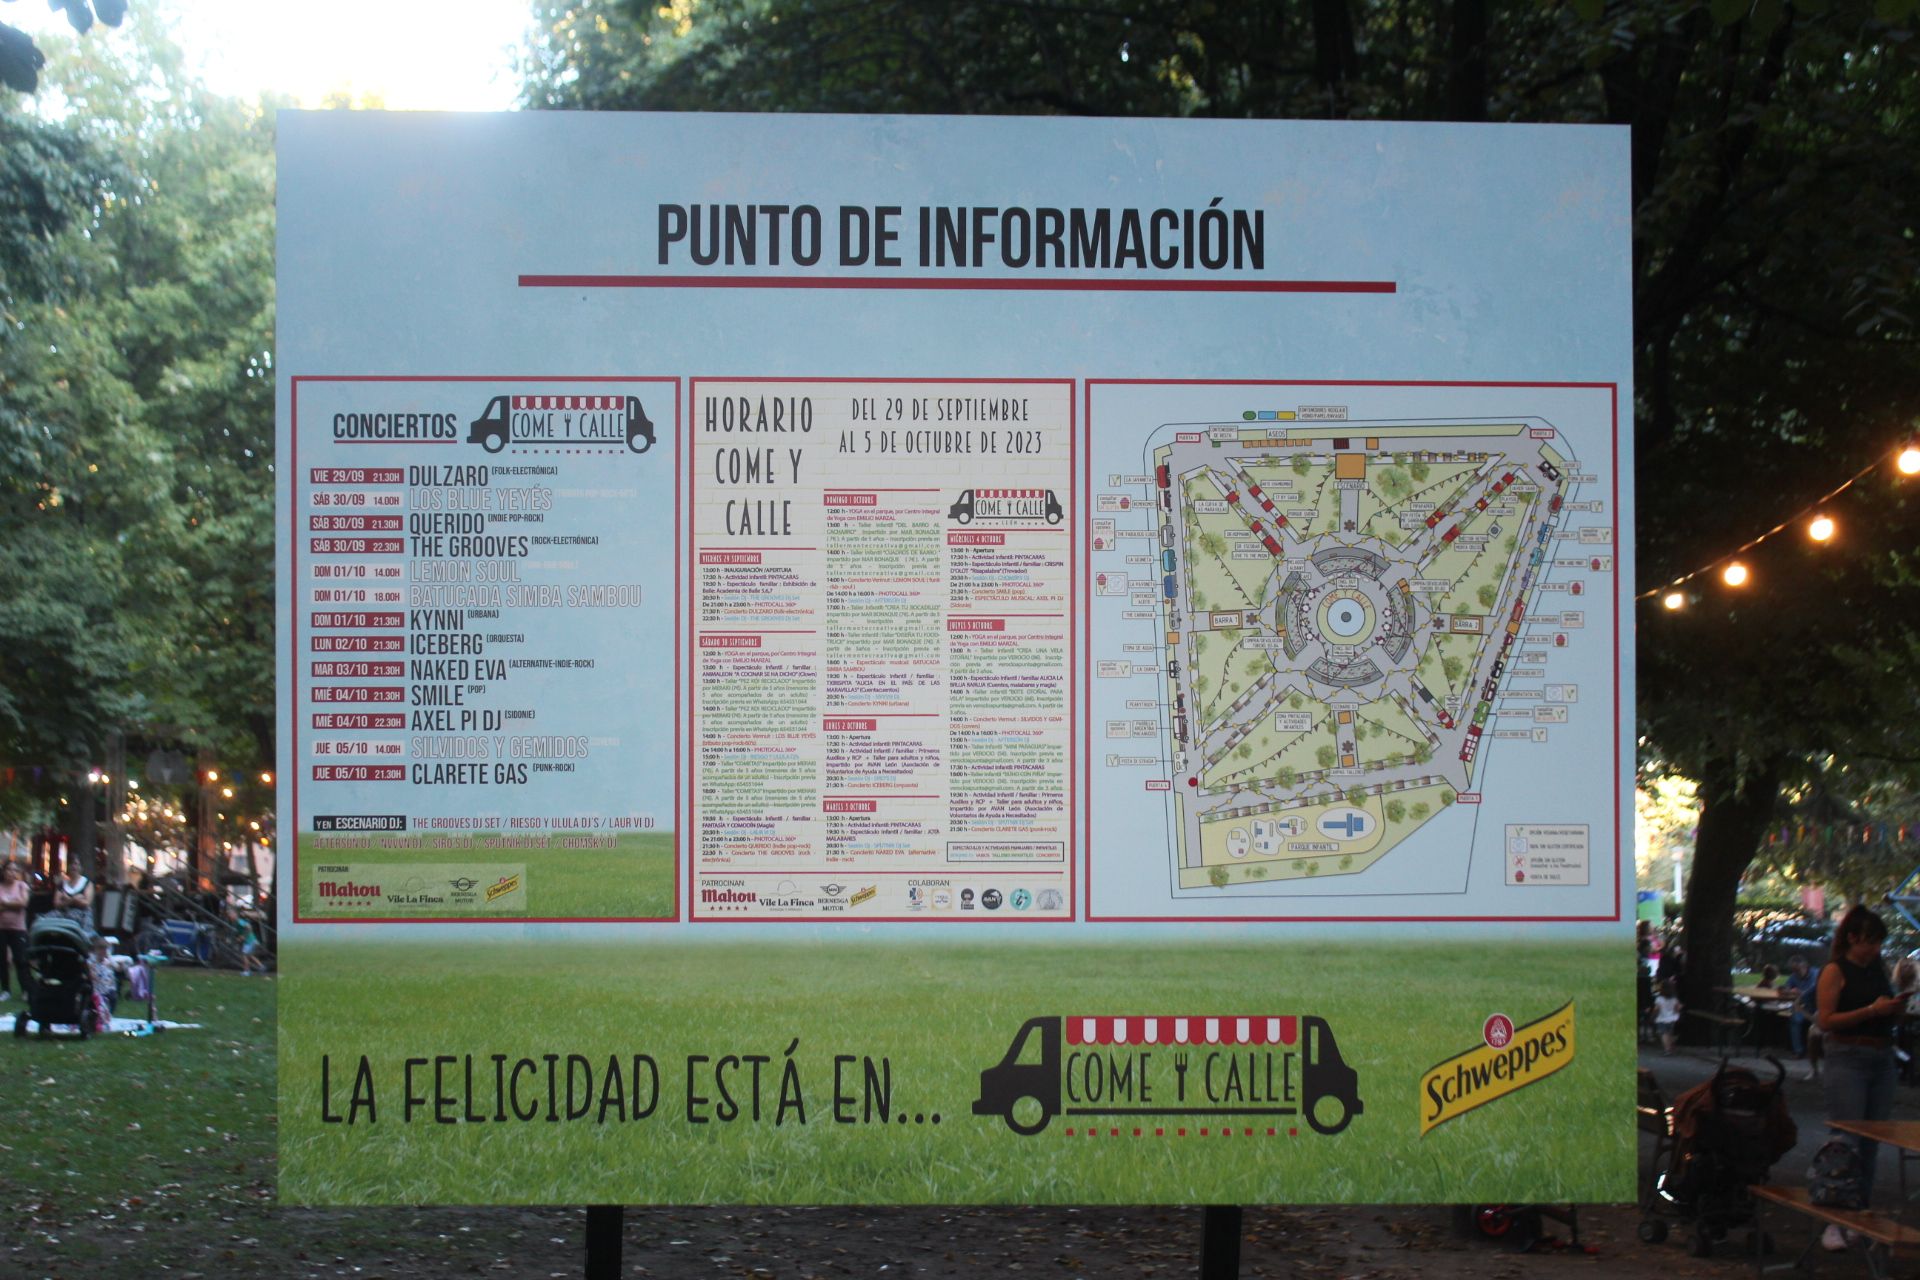 Uno de los puntos de información del 'Come y Calle' de León